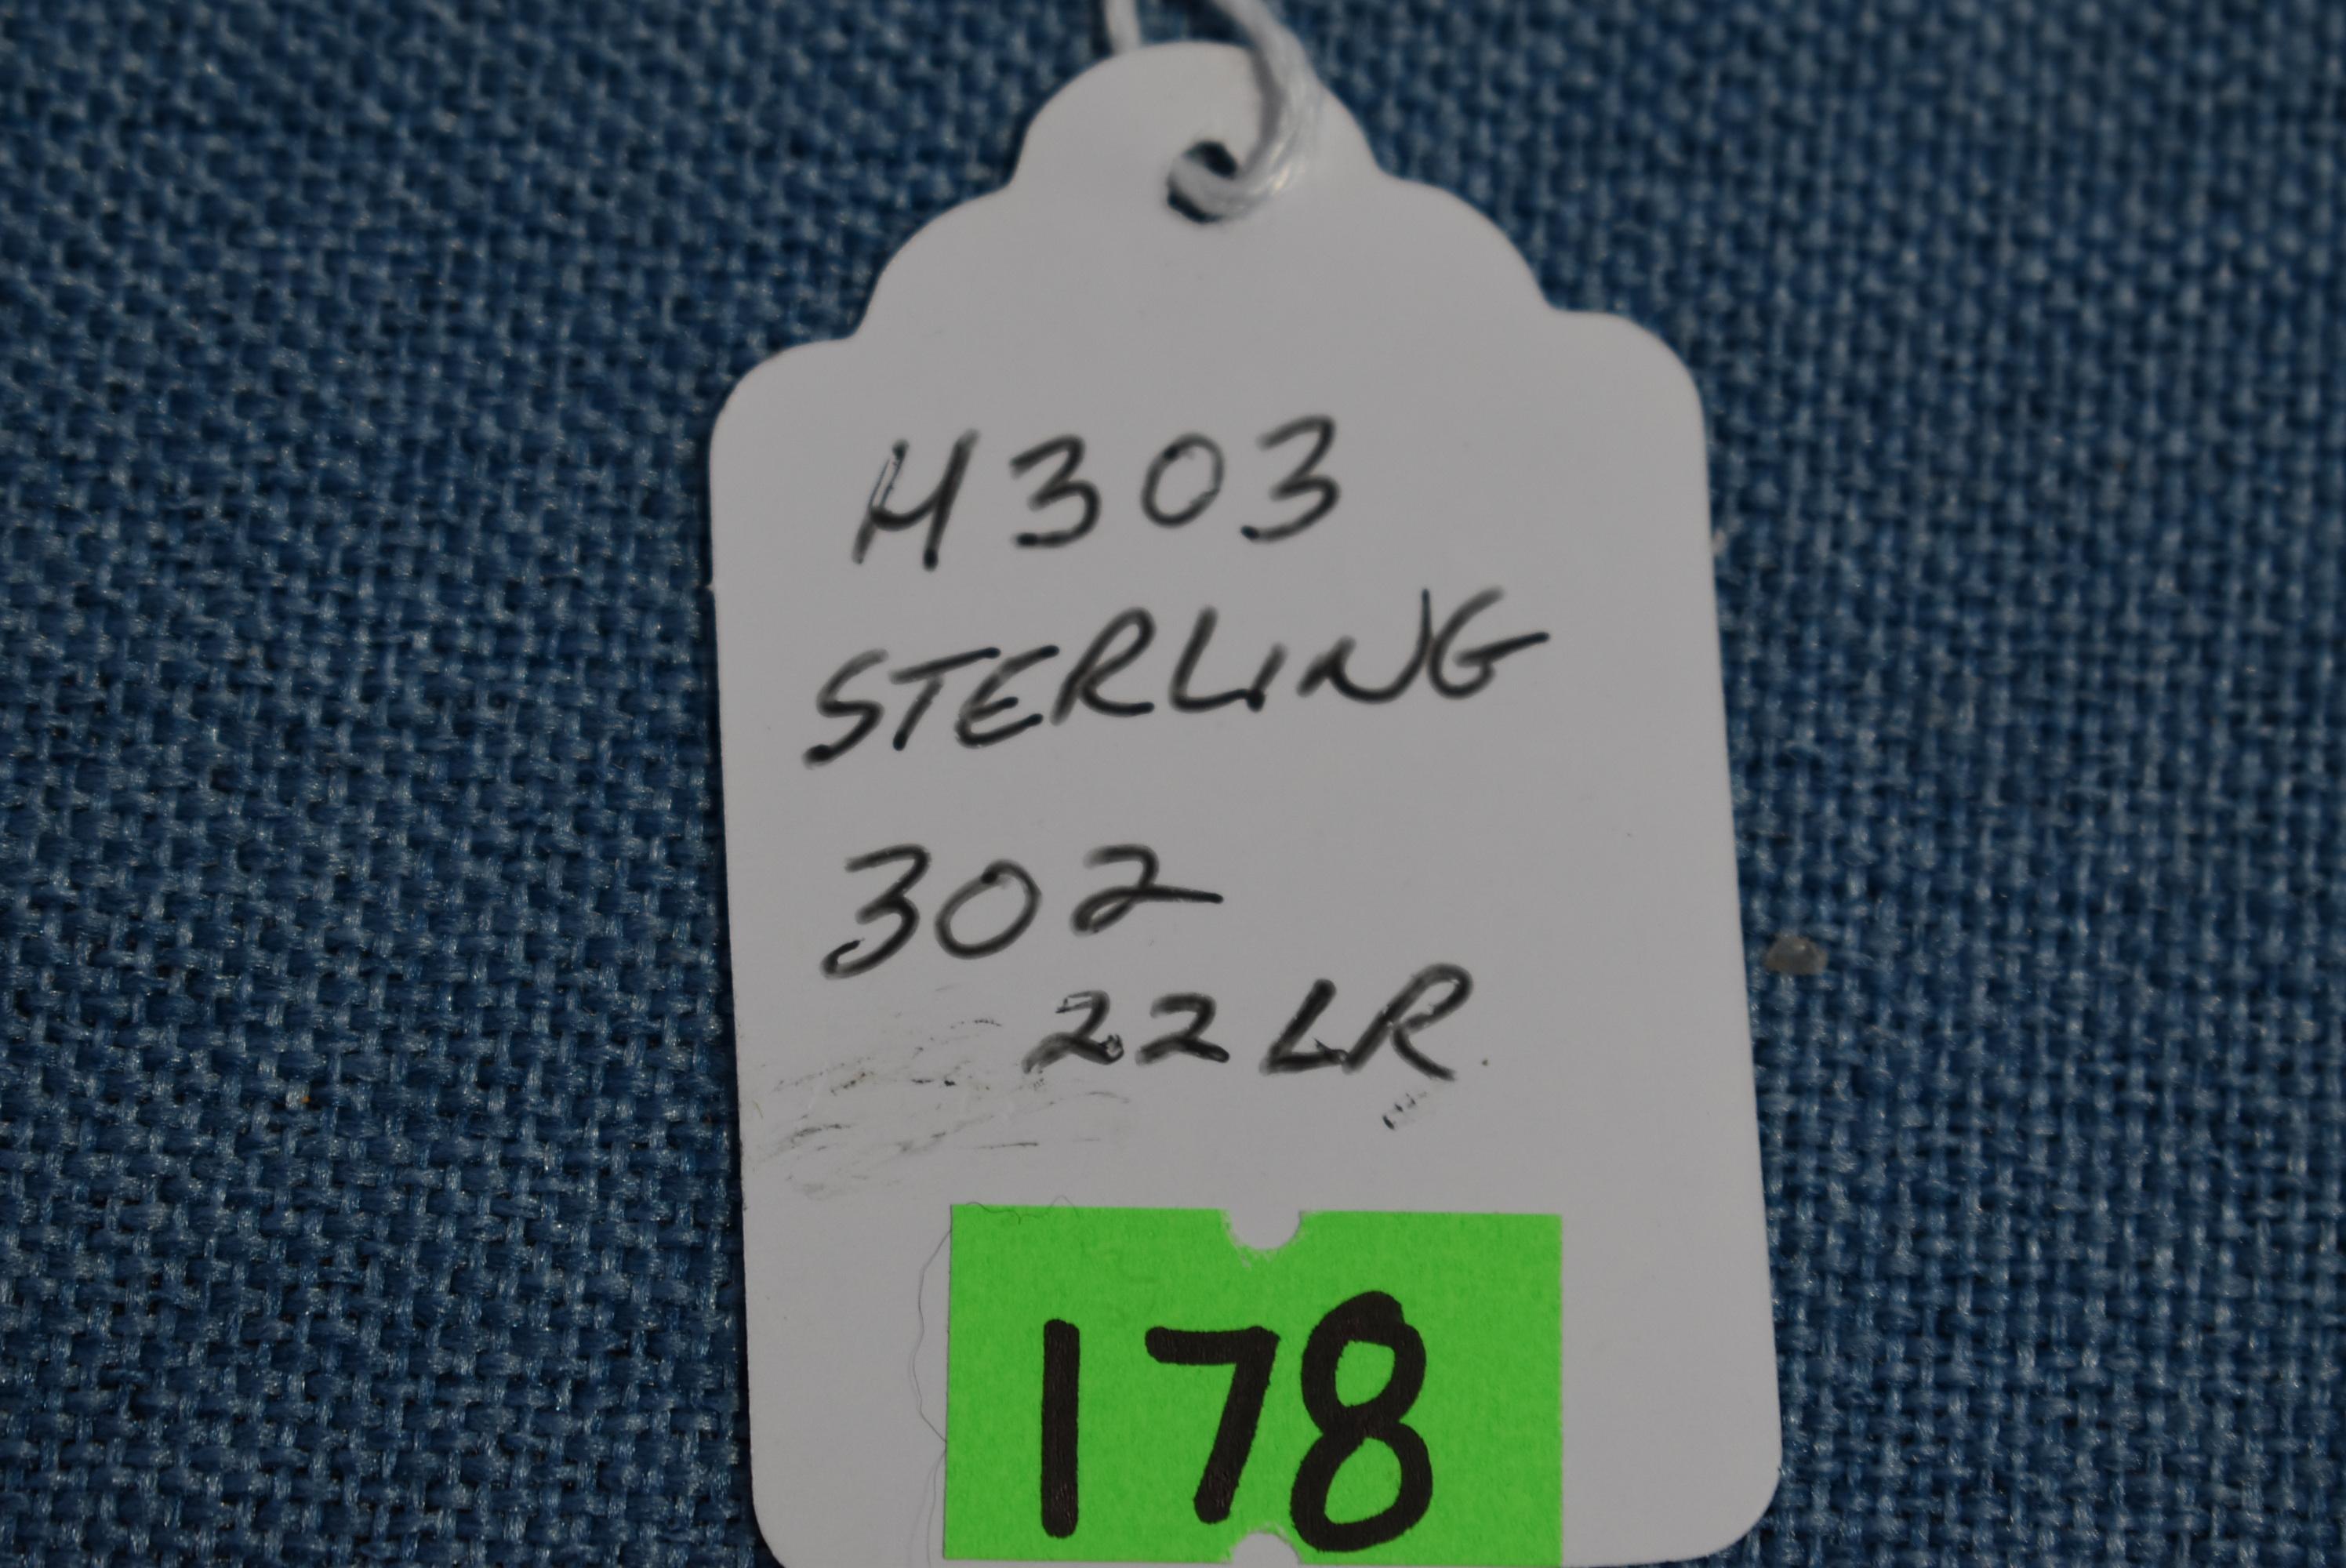 FIREARM/GUN STERLING 302!! H 303